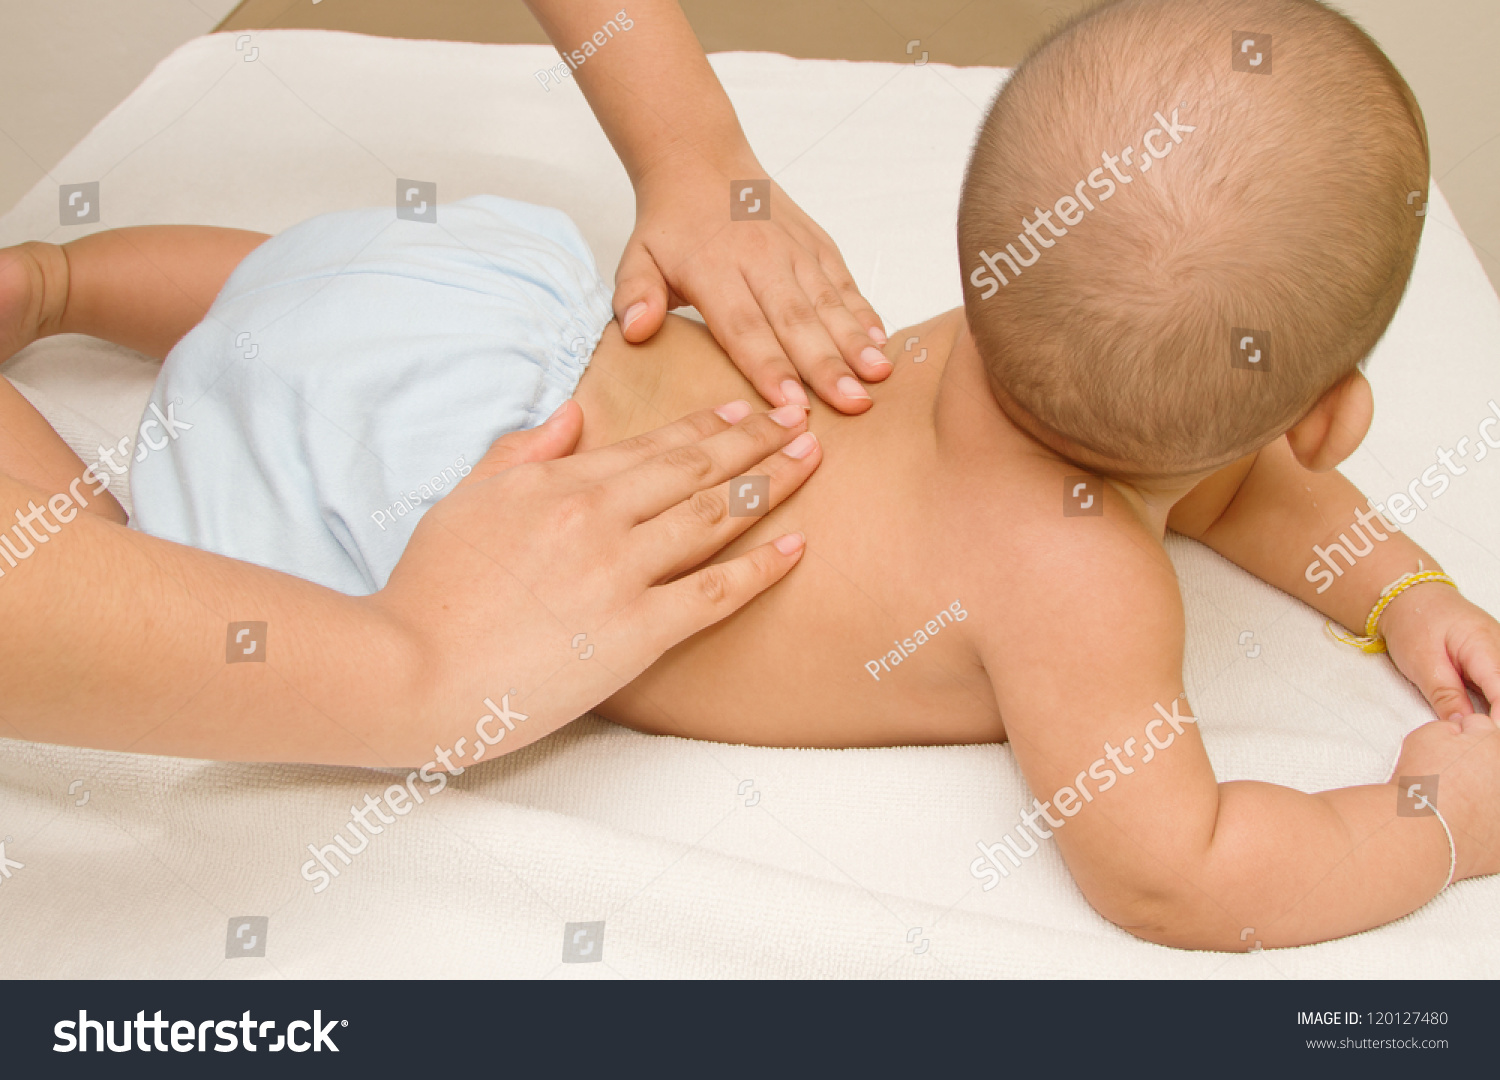 Массаж маме. Массаж животика новорожденному. Массаж грудному ребенку. Детский массаж живота девочке. Ноги делают маме массаж